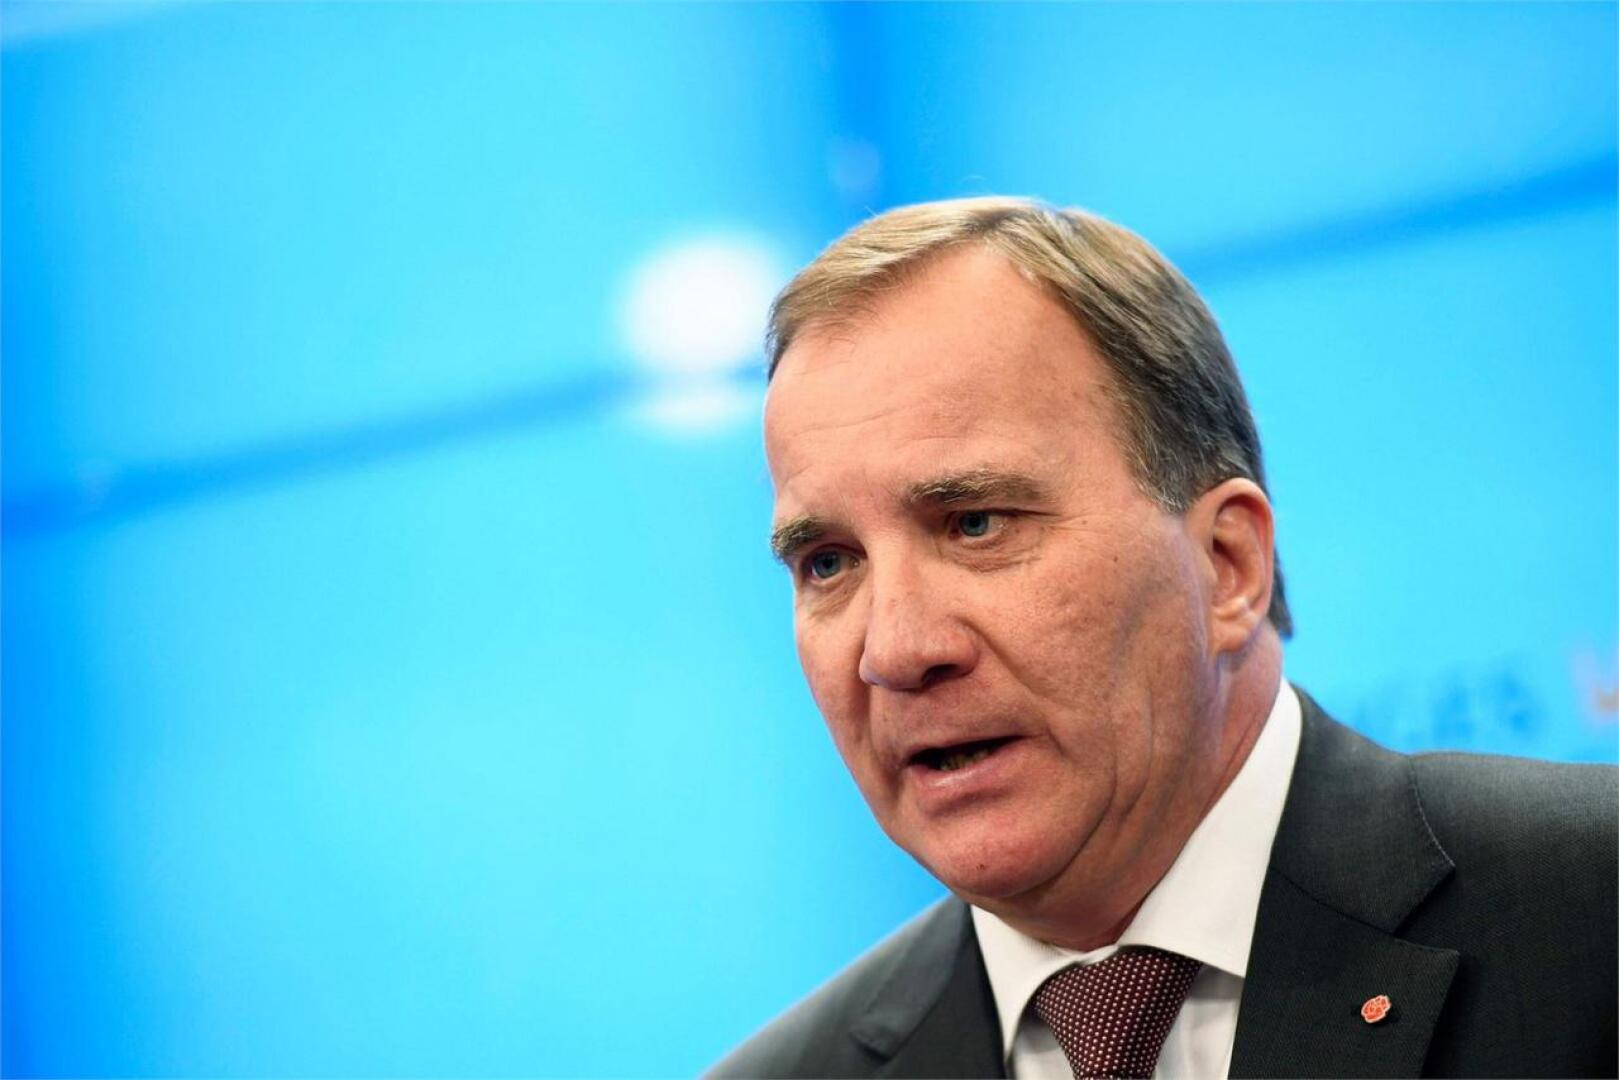 Sosiaalidemokraattien puheenjohtaja Stefan Löfven ei ole tällä kertaa kelvannut pääministeriksi. LEHTIKUVA/AFP